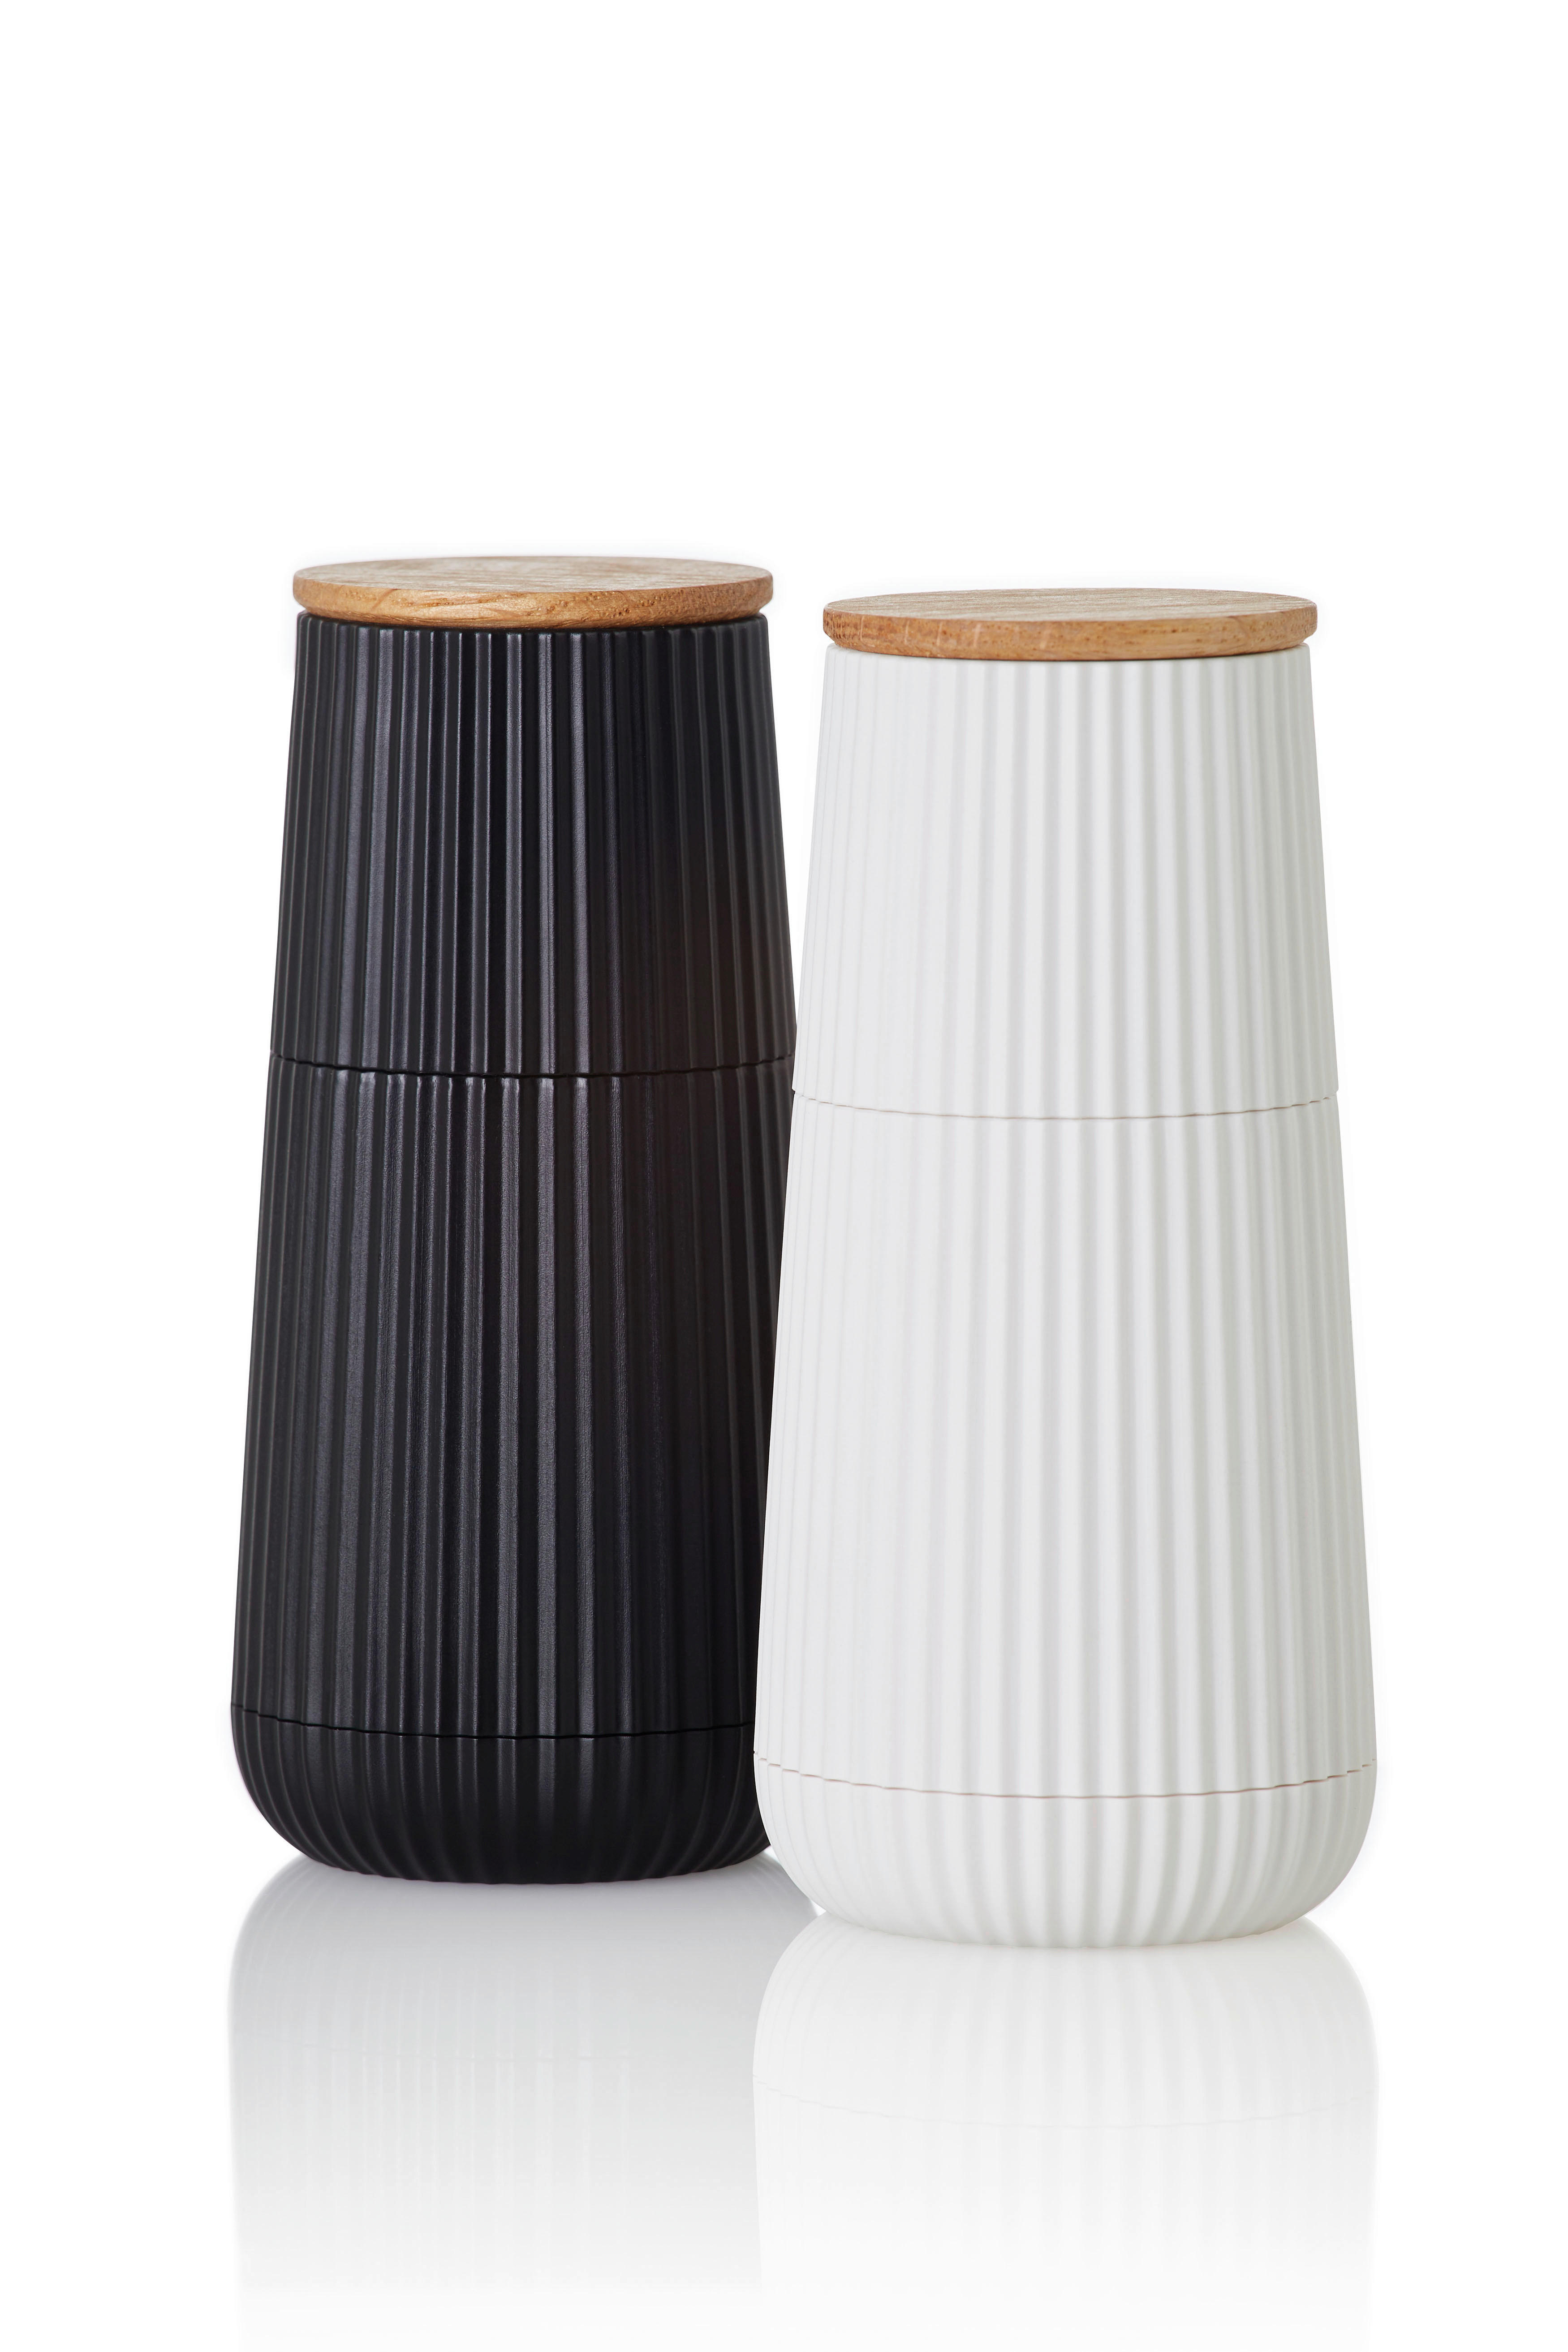 SALZ- UND PFEFFERMÜHLE - Schwarz/Weiß, Design, Keramik/Kunststoff (5,8/12,3cm) - AdHoc